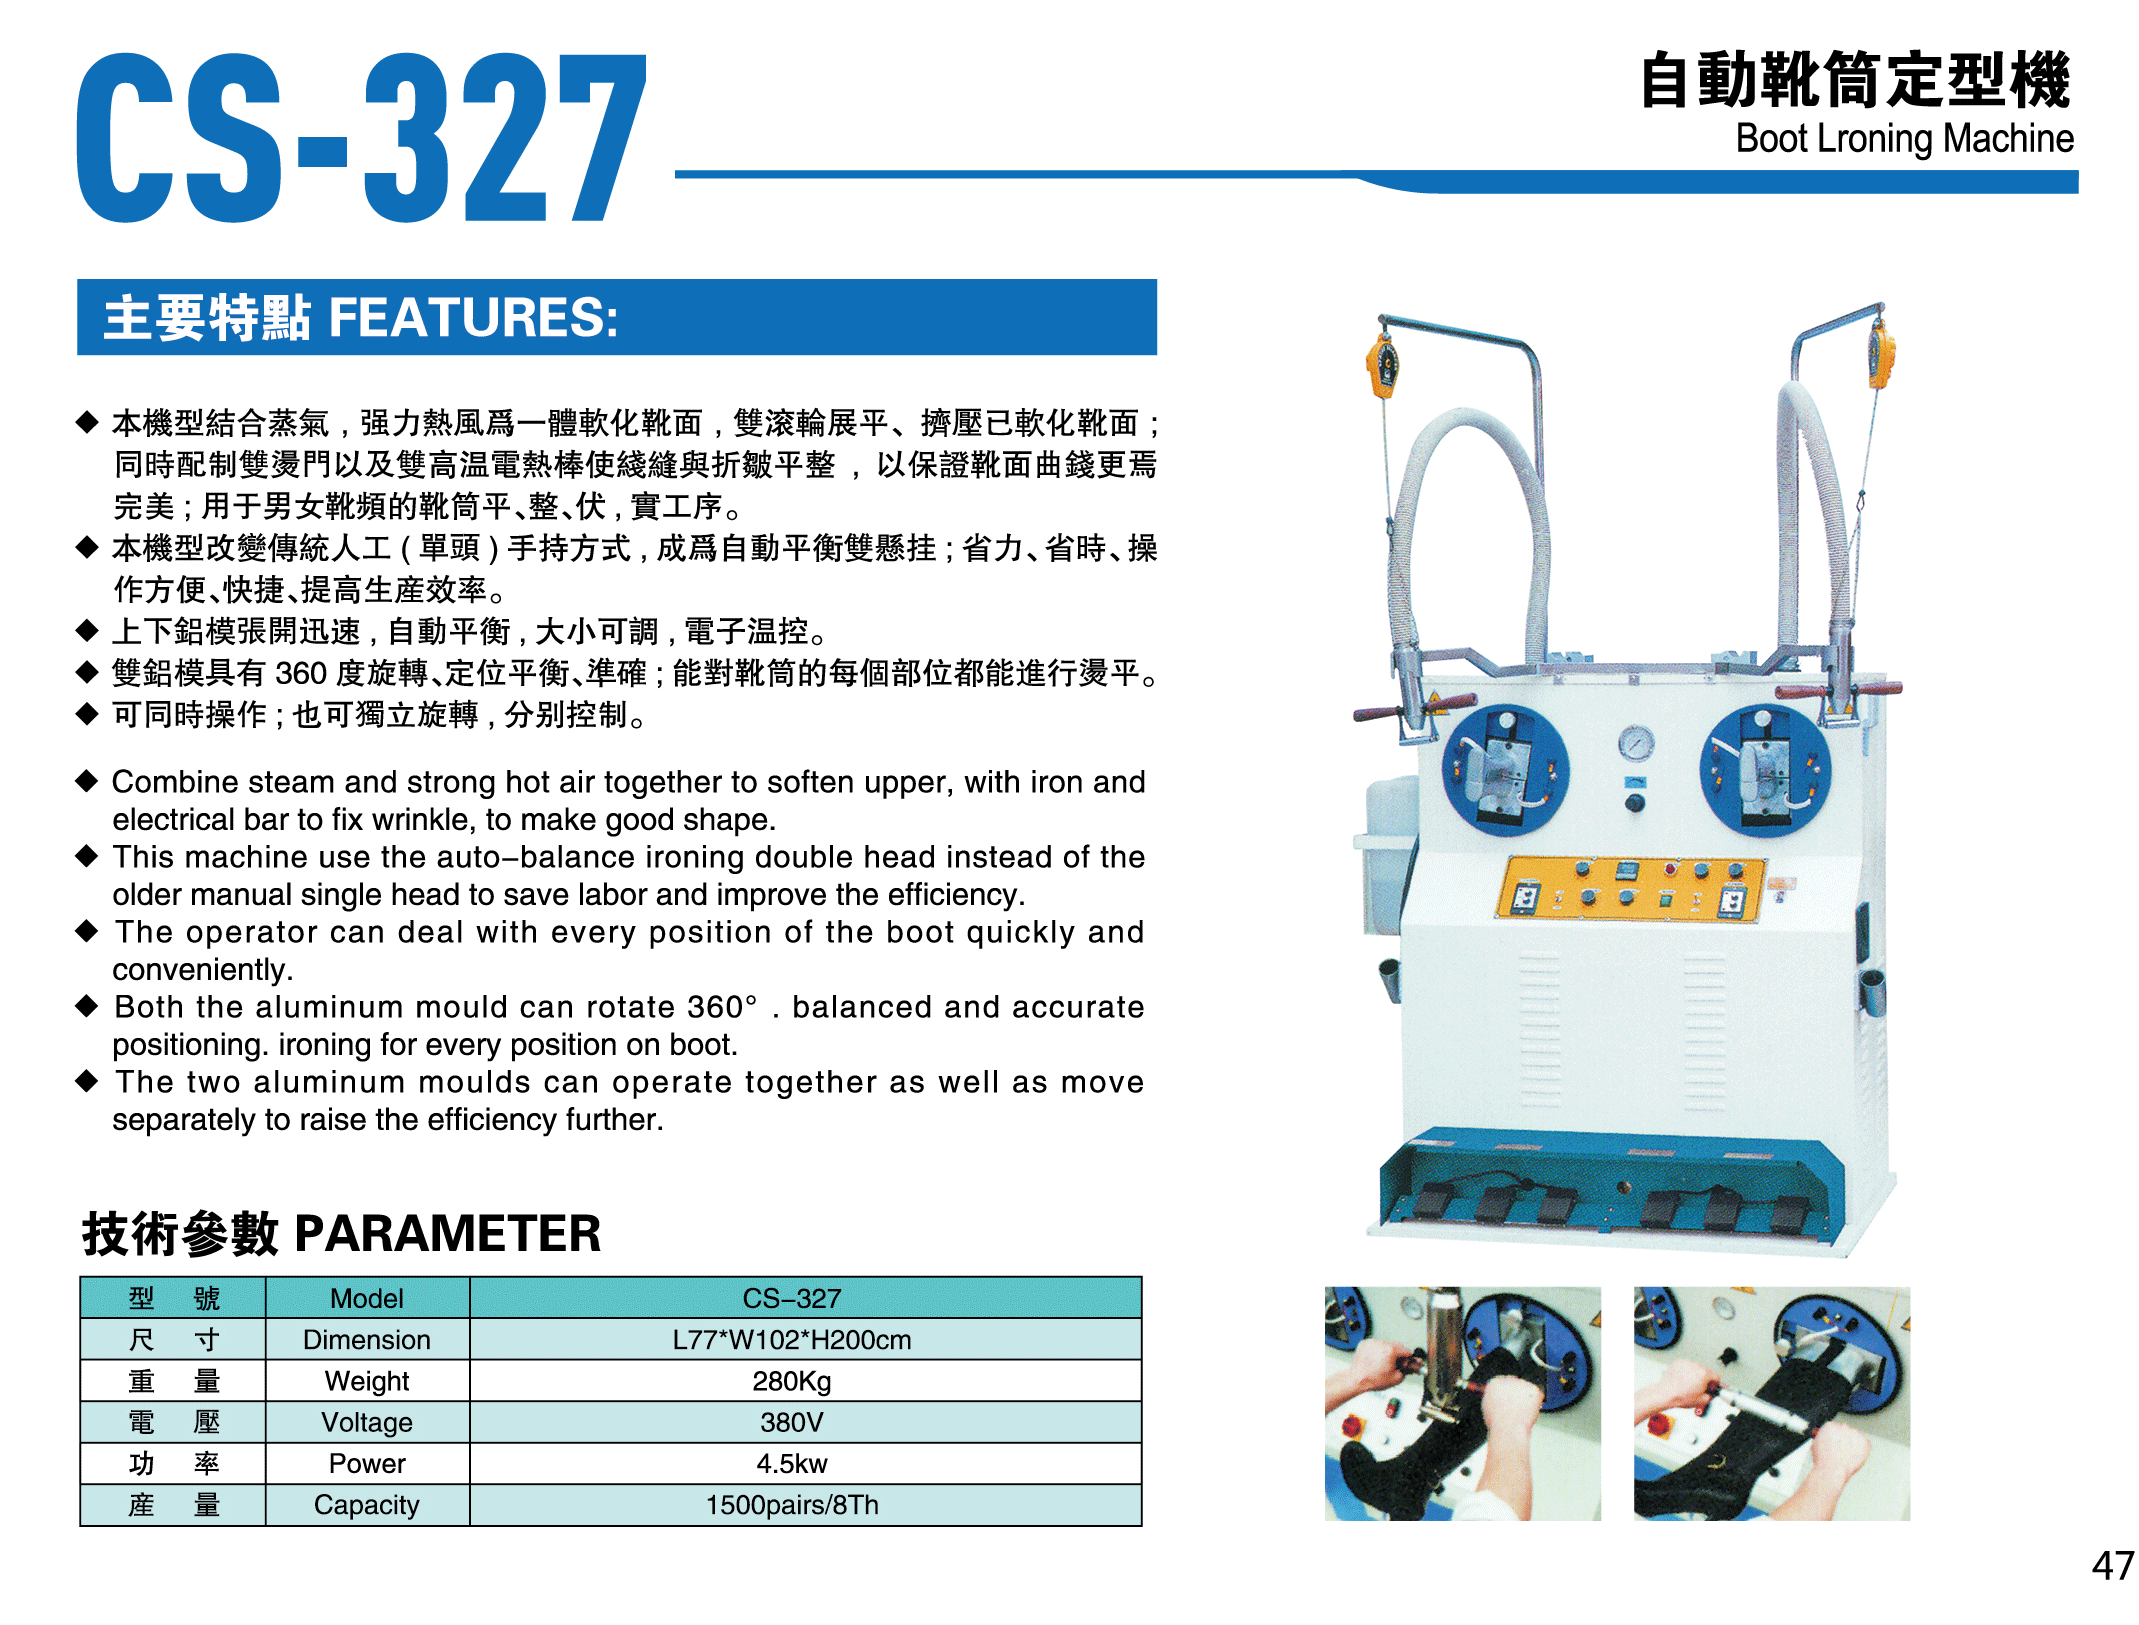 CS-327